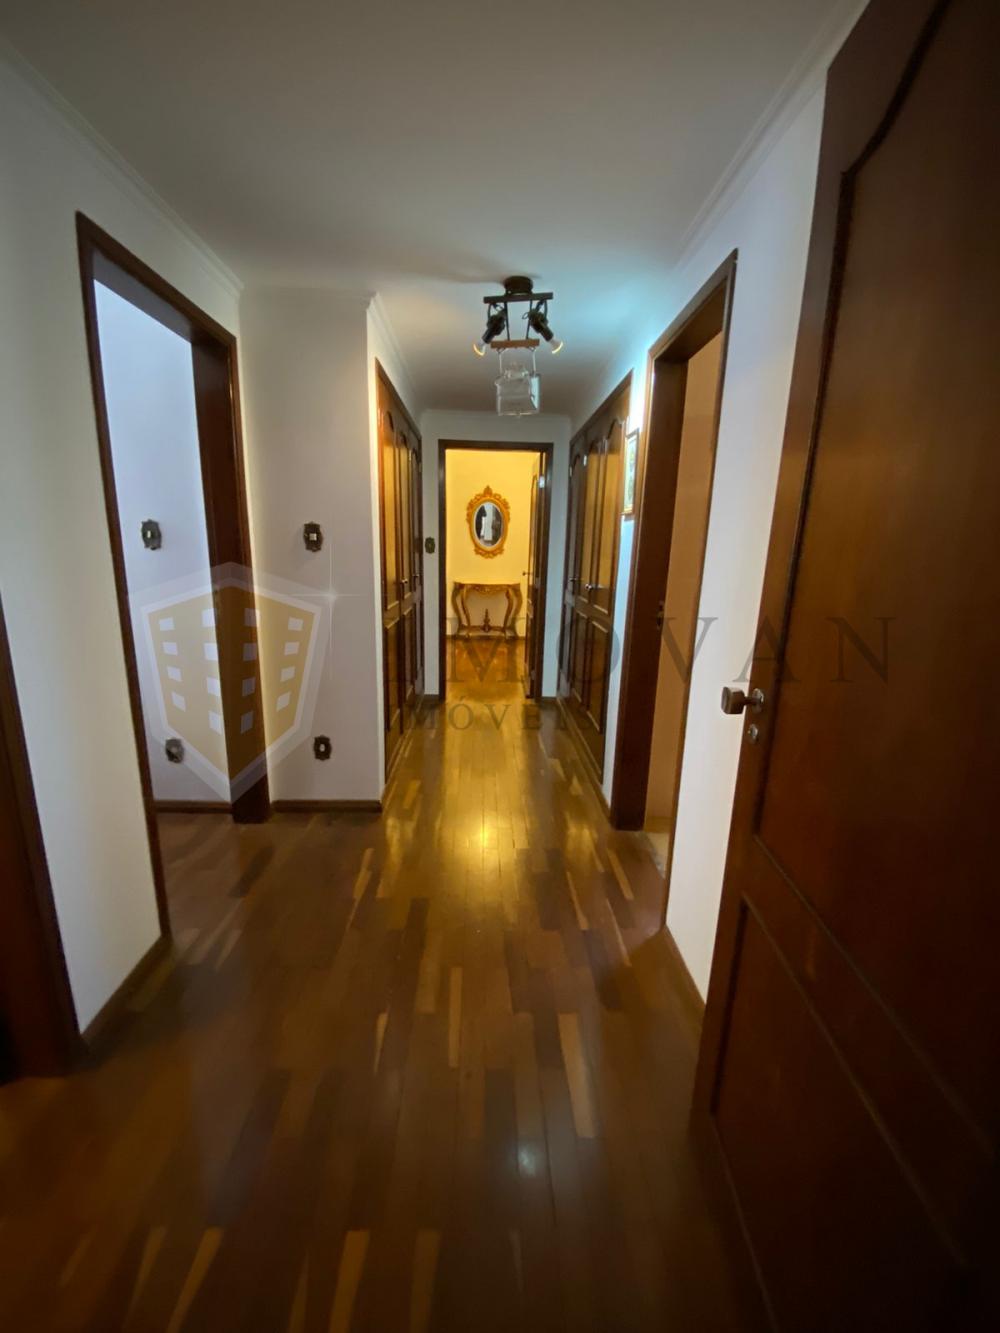 Comprar Apartamento / Padrão em Ribeirão Preto R$ 450.000,00 - Foto 14